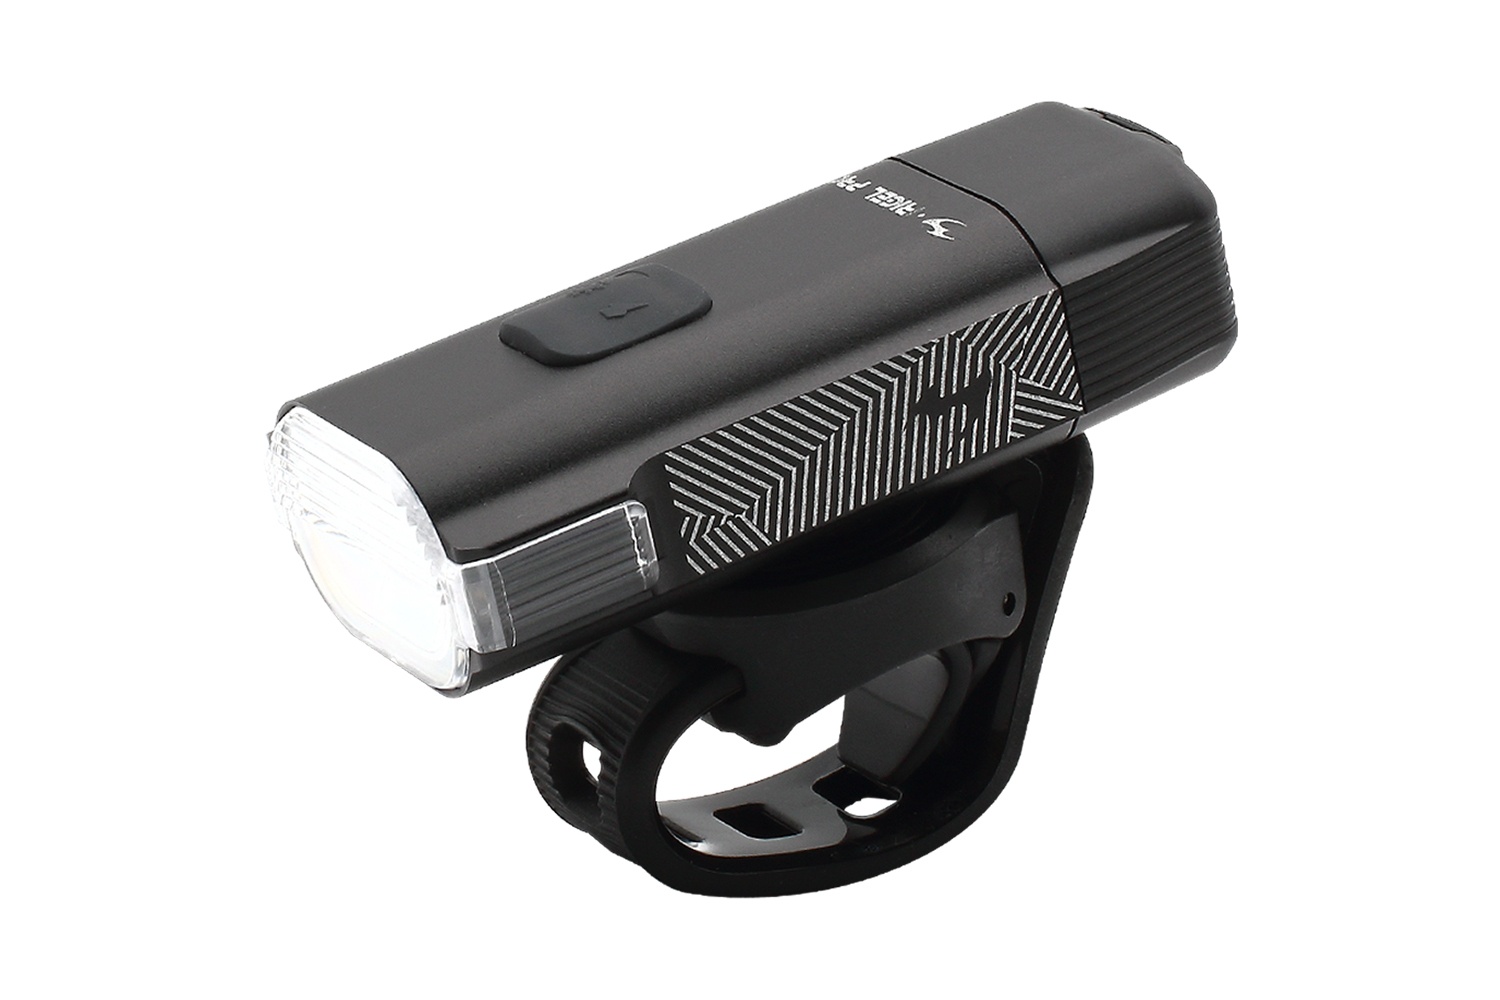  Передний фонарь для велосипеда Moon Rigel Pro, 1000 люмен, 2 диода, 6 режимов, USB-C